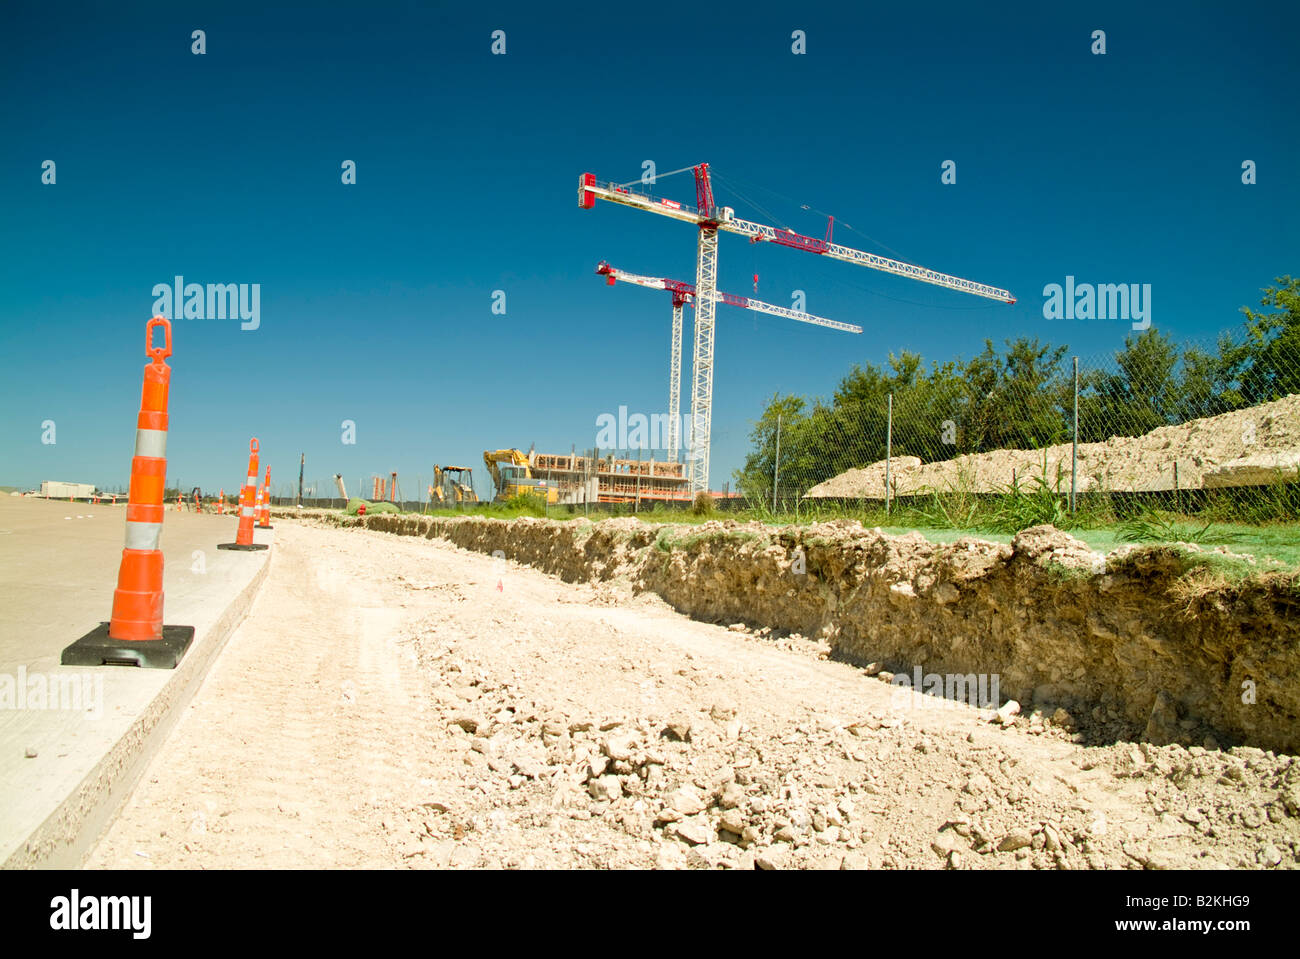 Sicherheit oder Warnung Kegel mit zwei große Kräne im Hintergrund einer Baustelle Stockfoto